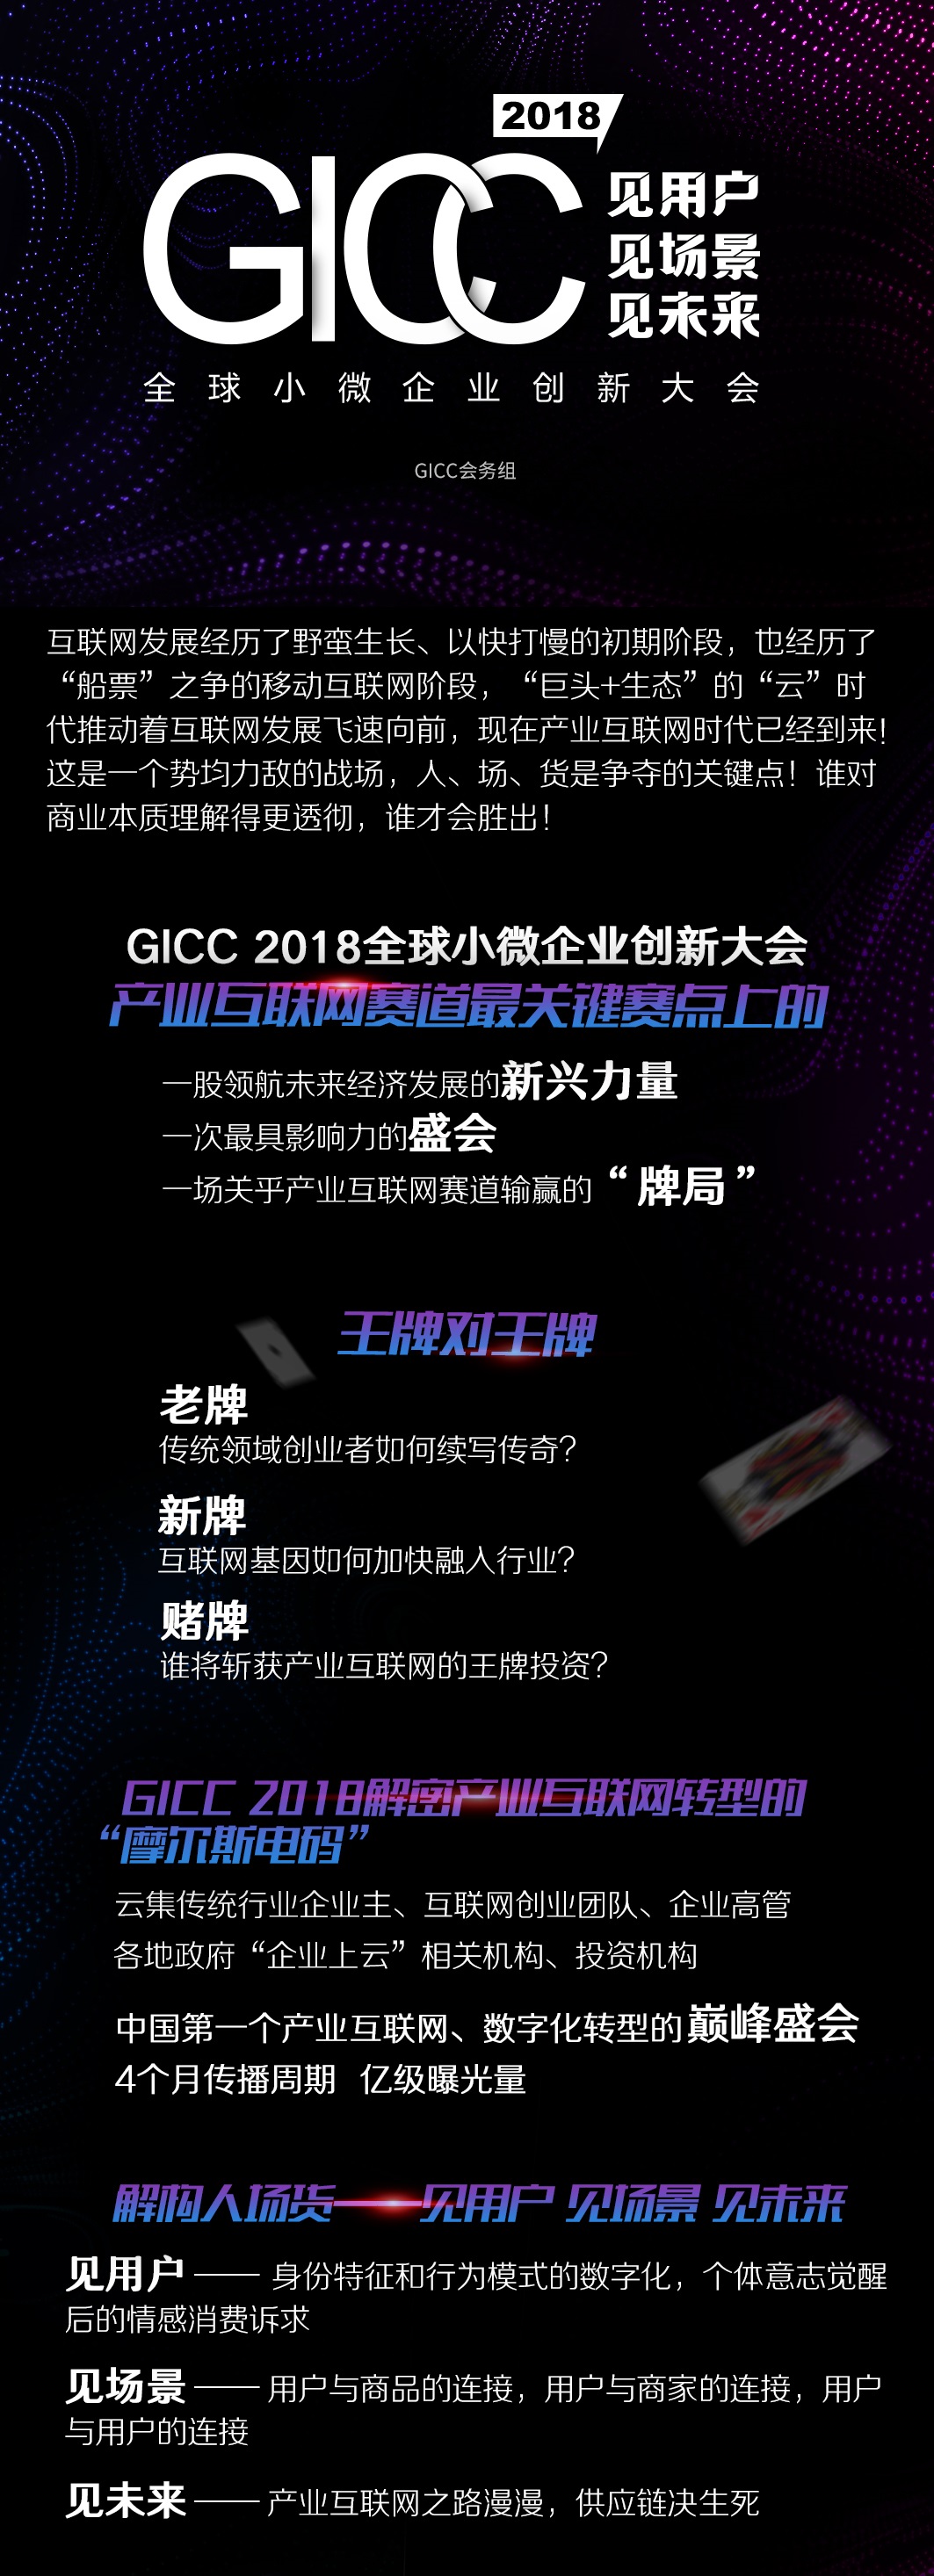 GICC 2018全球小微企业创新大会